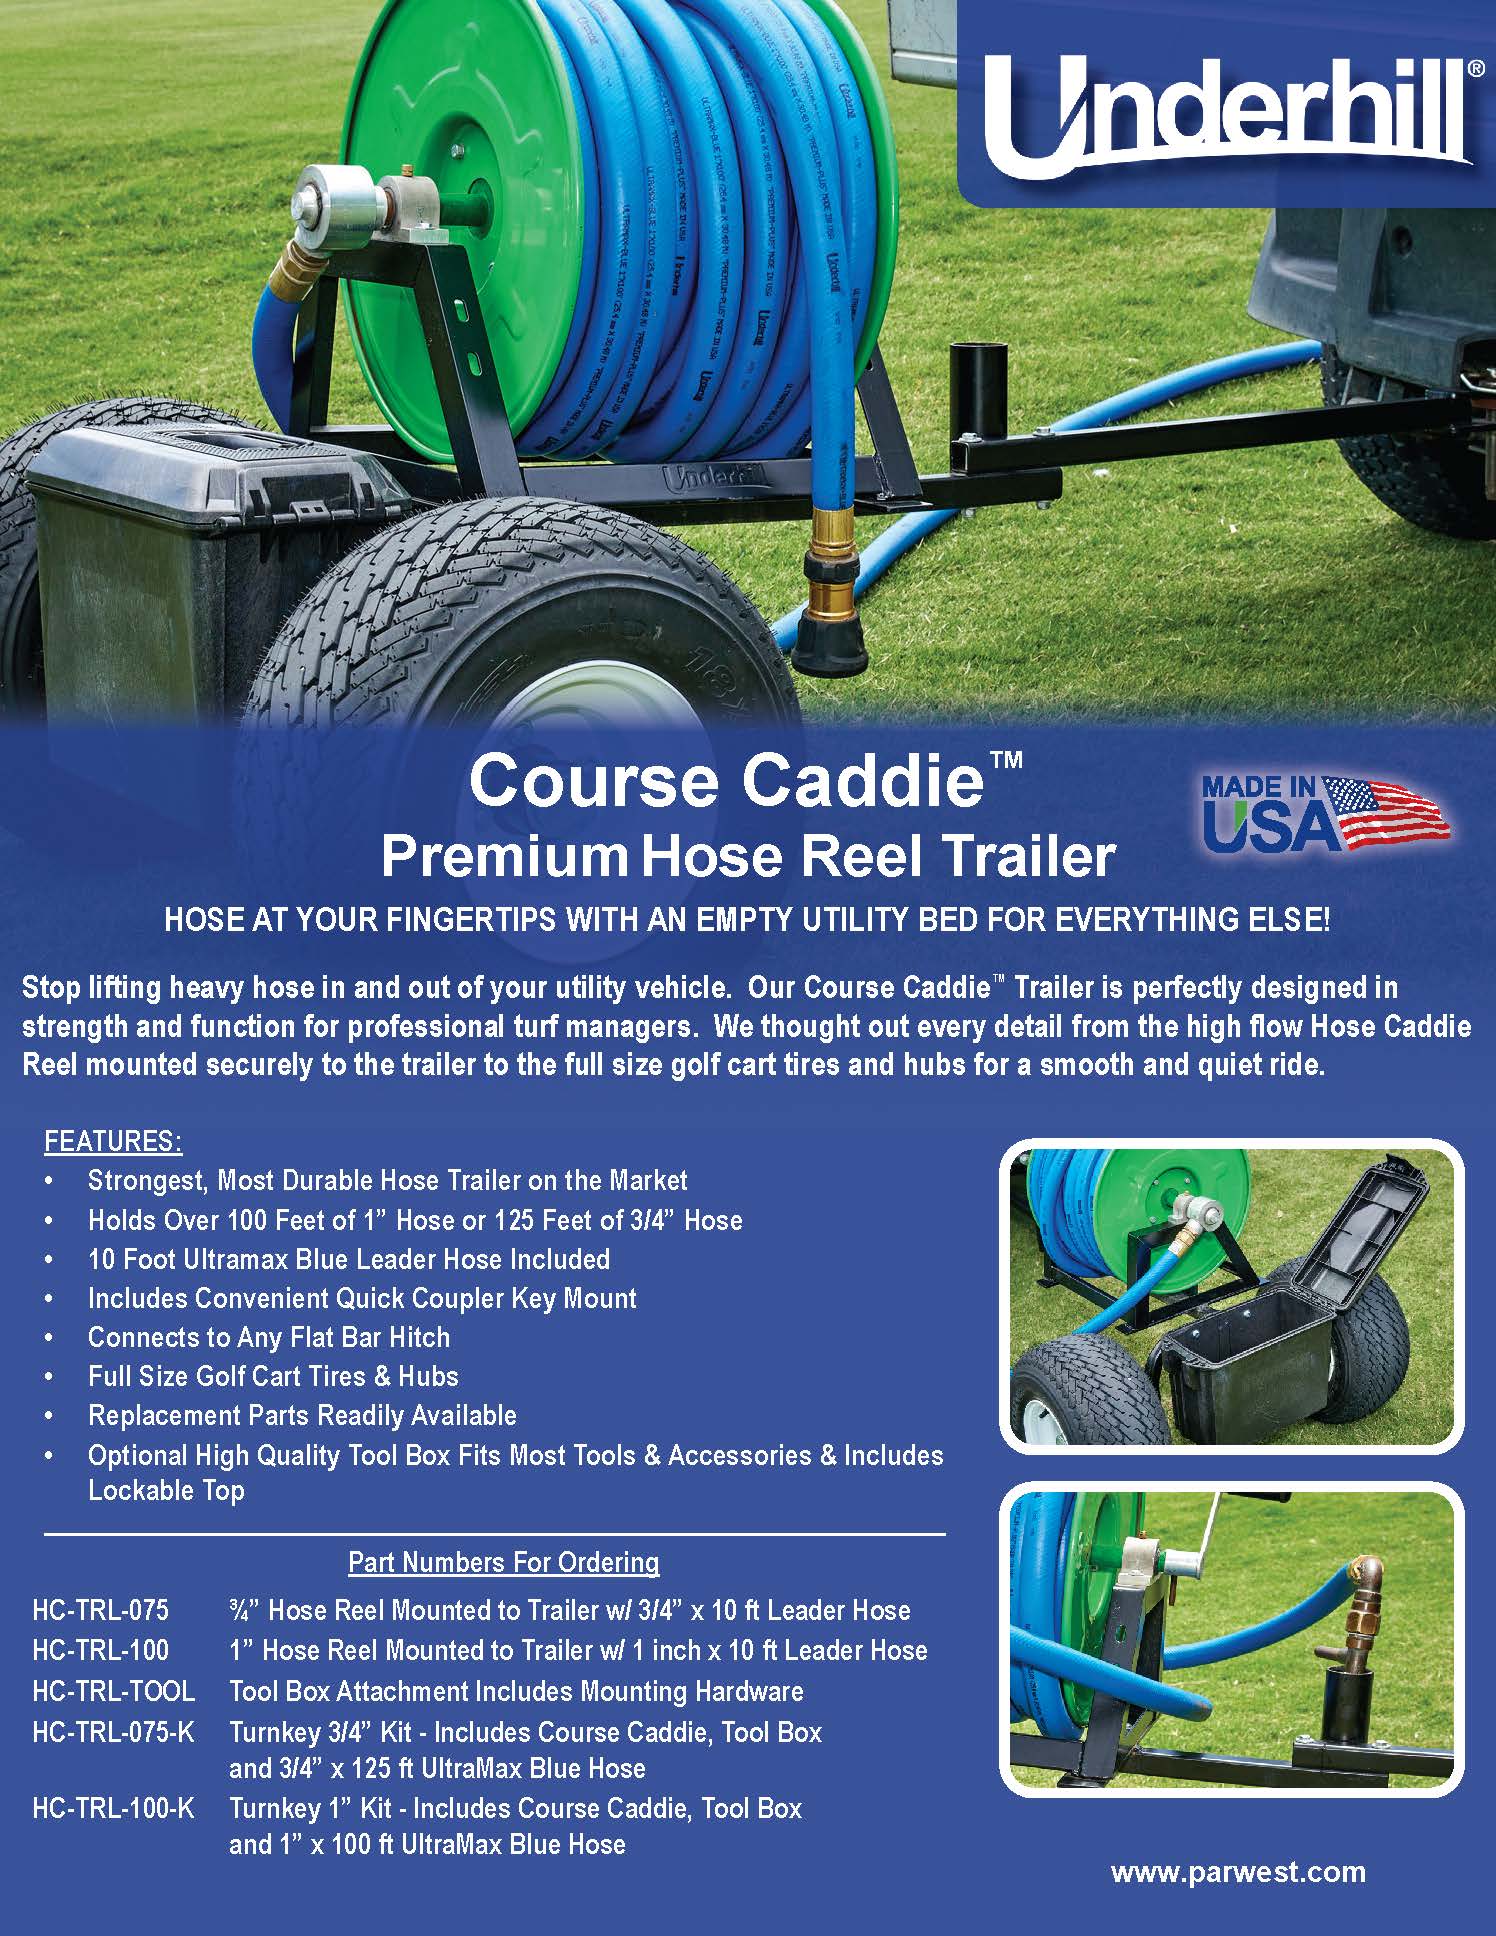 Underhill Course Caddie Turnkey Kit - 3/4 inch (HC-TRL-075-K)